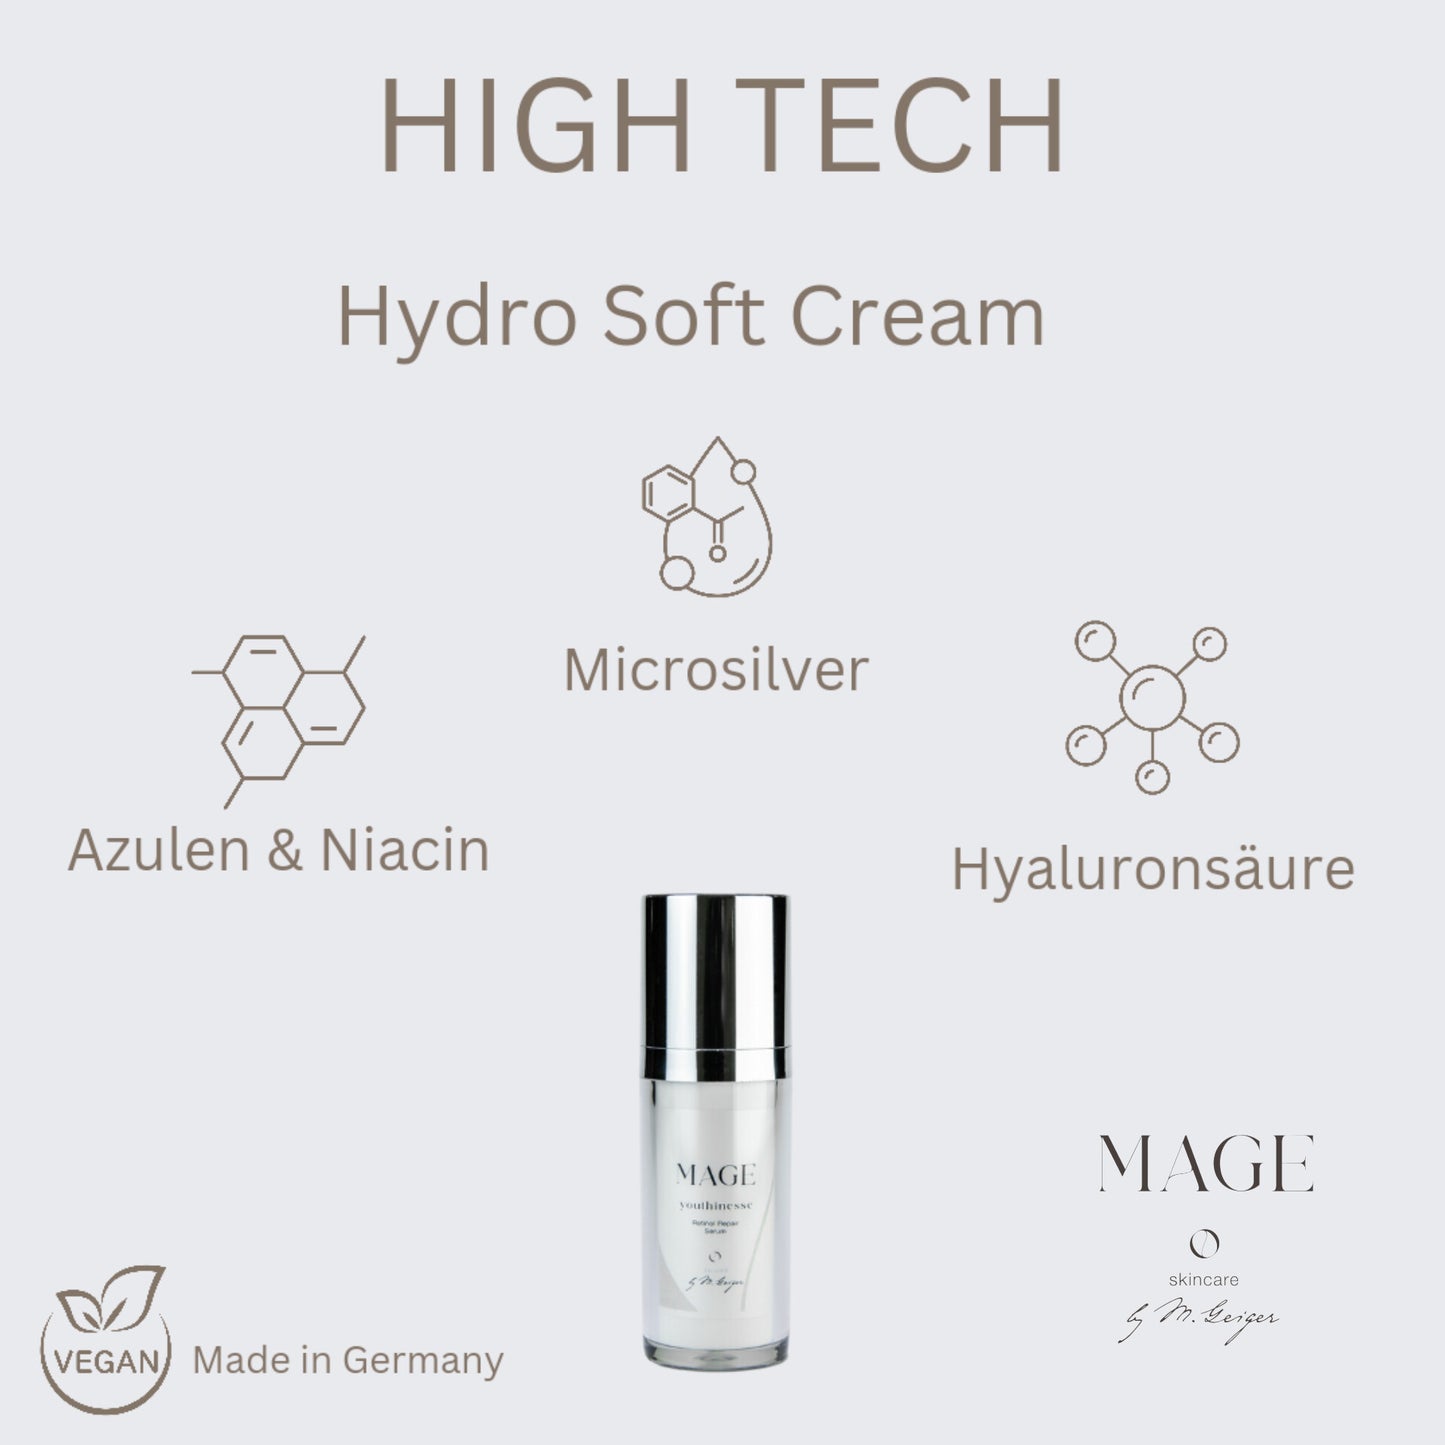 Hydro Soft Cream tiefe Feuchtigkeit SOS beseitigt schnell die Rötungen